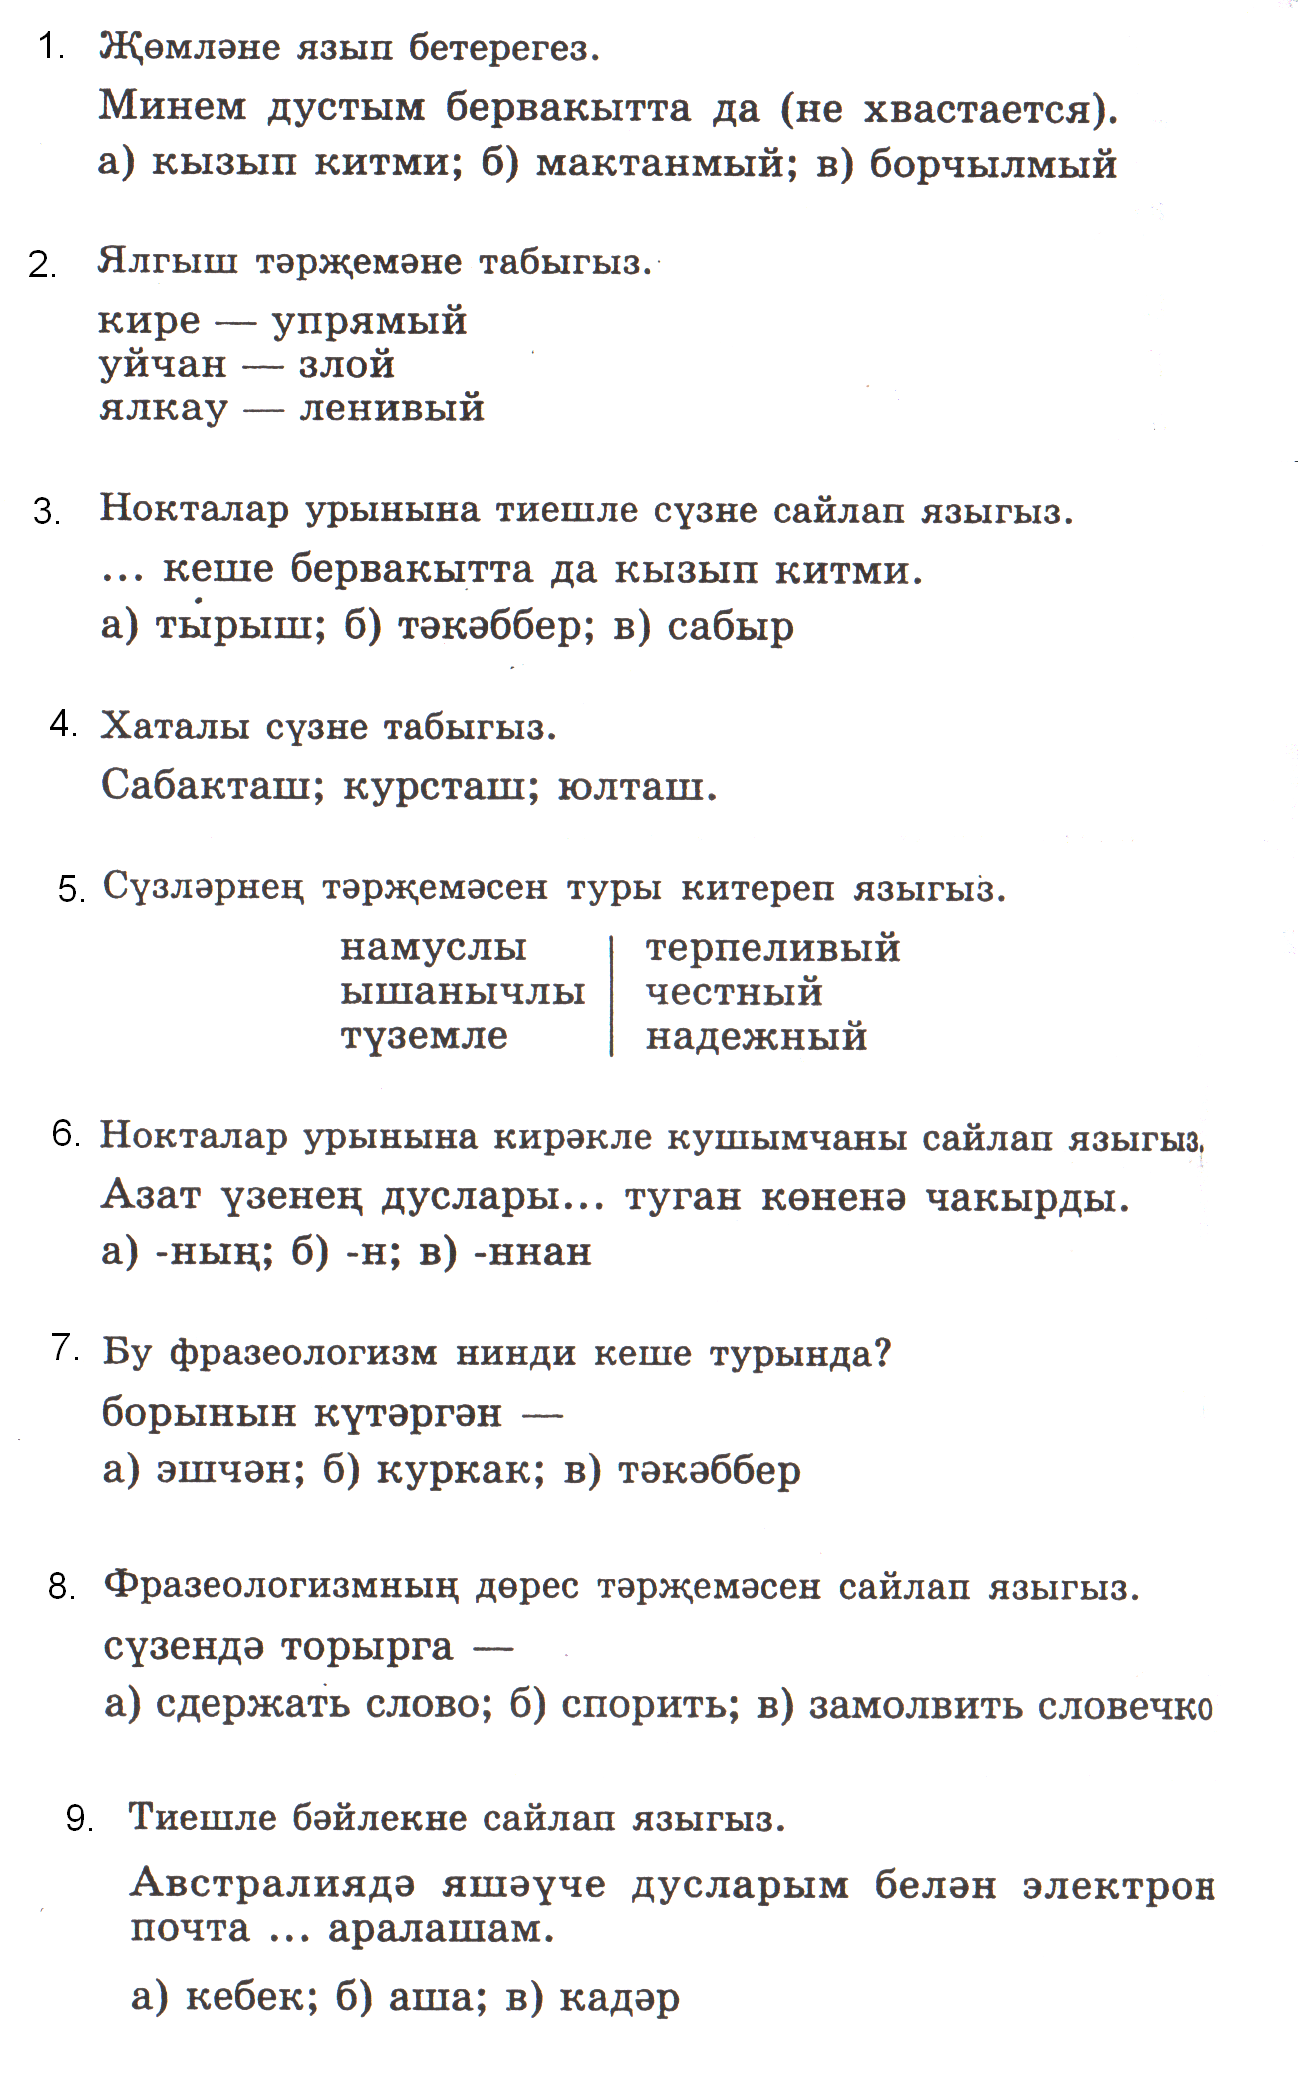 Контрольные работы по татарскому языку для 5-11классов